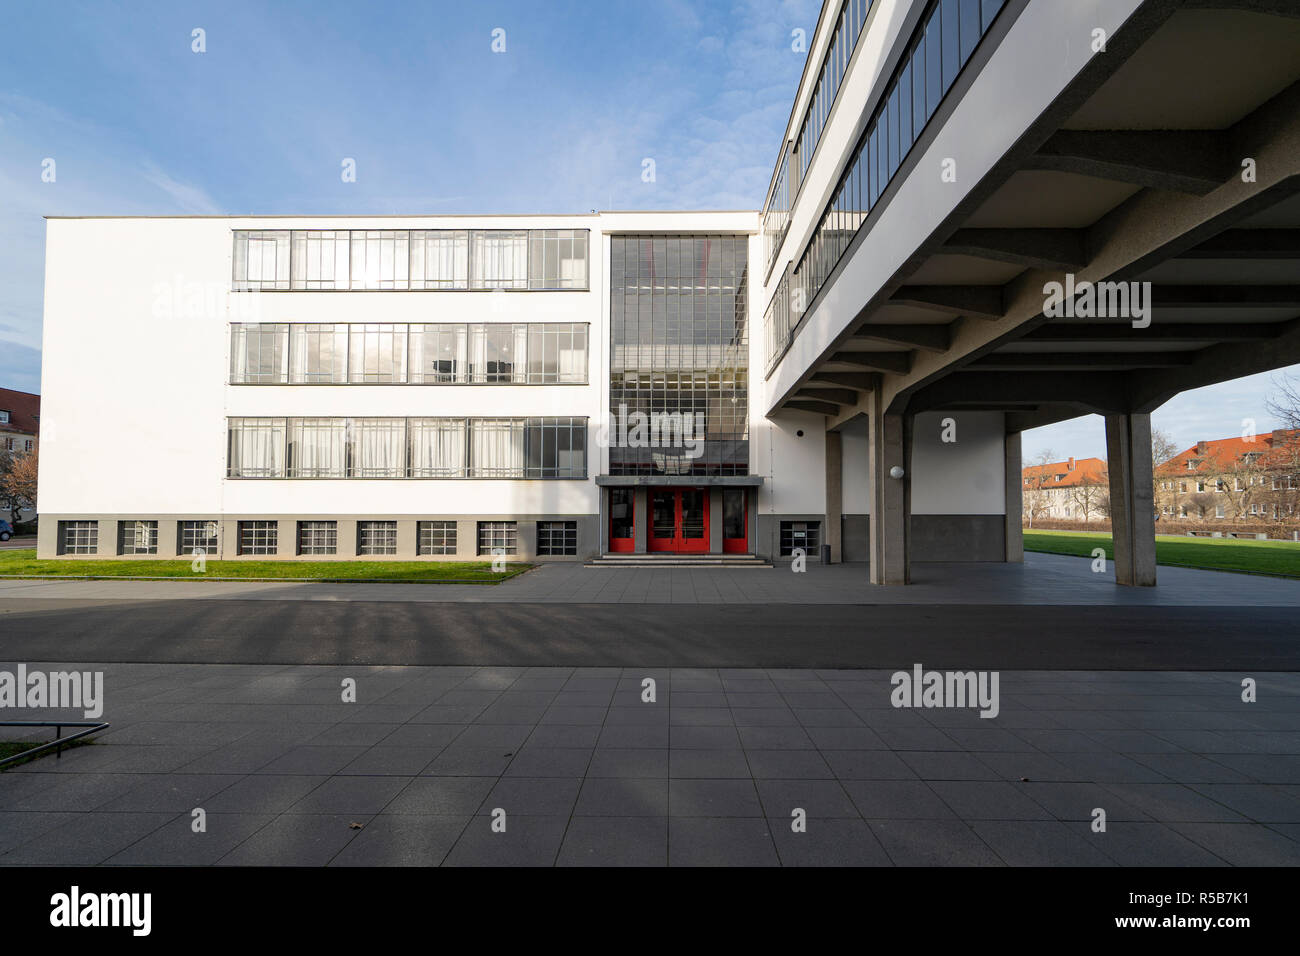 Bauhaus Architektur an der Schule für Gestaltung in Dessau, Deutschland Stockfoto